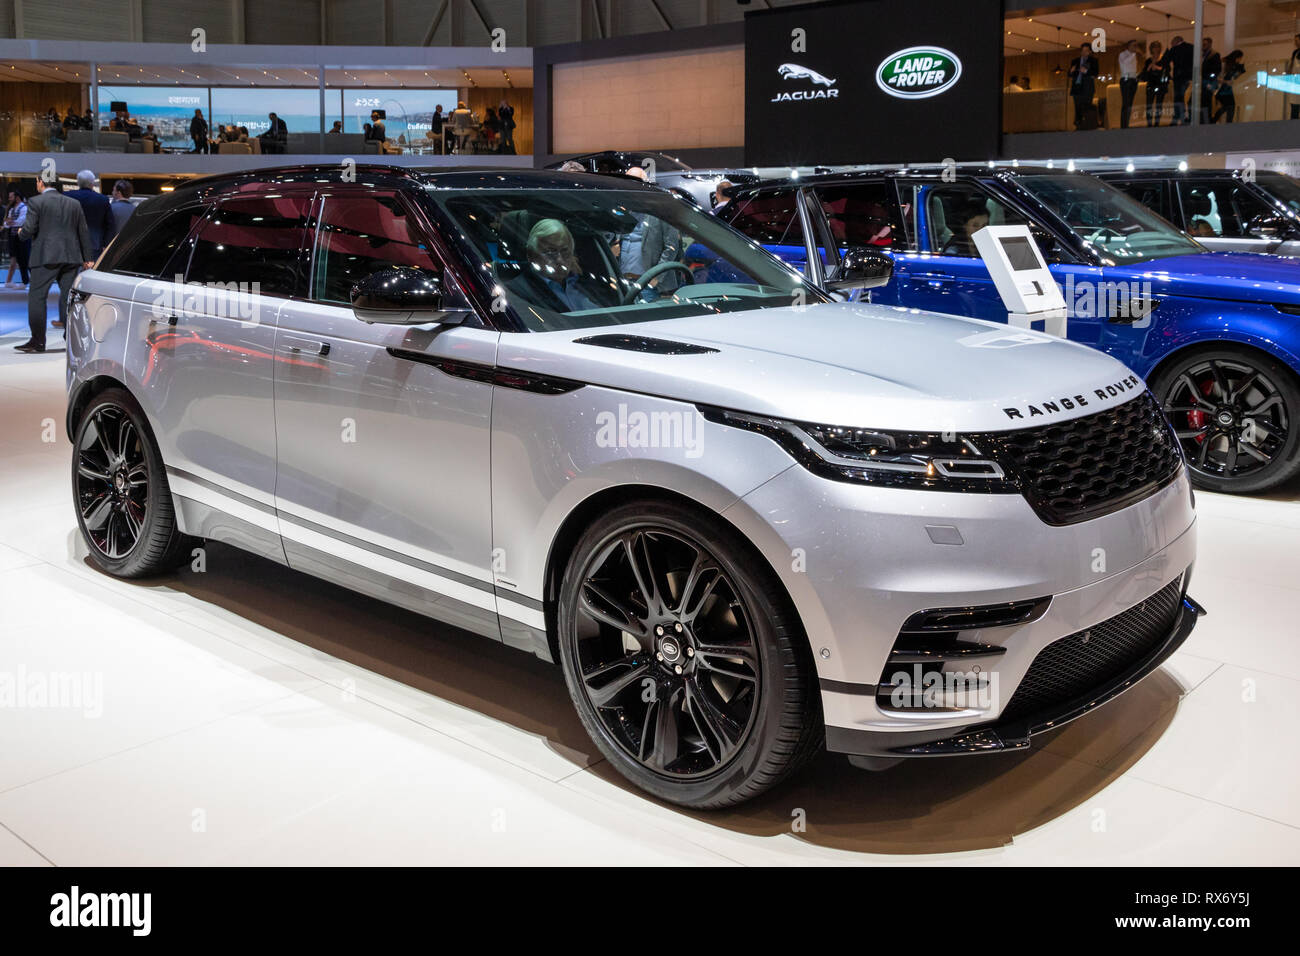 Genf, Schweiz - 6. MÄRZ 2018: Range Rover velaren Auto auf dem 88. Internationalen Automobilsalon in Genf präsentiert. Stockfoto